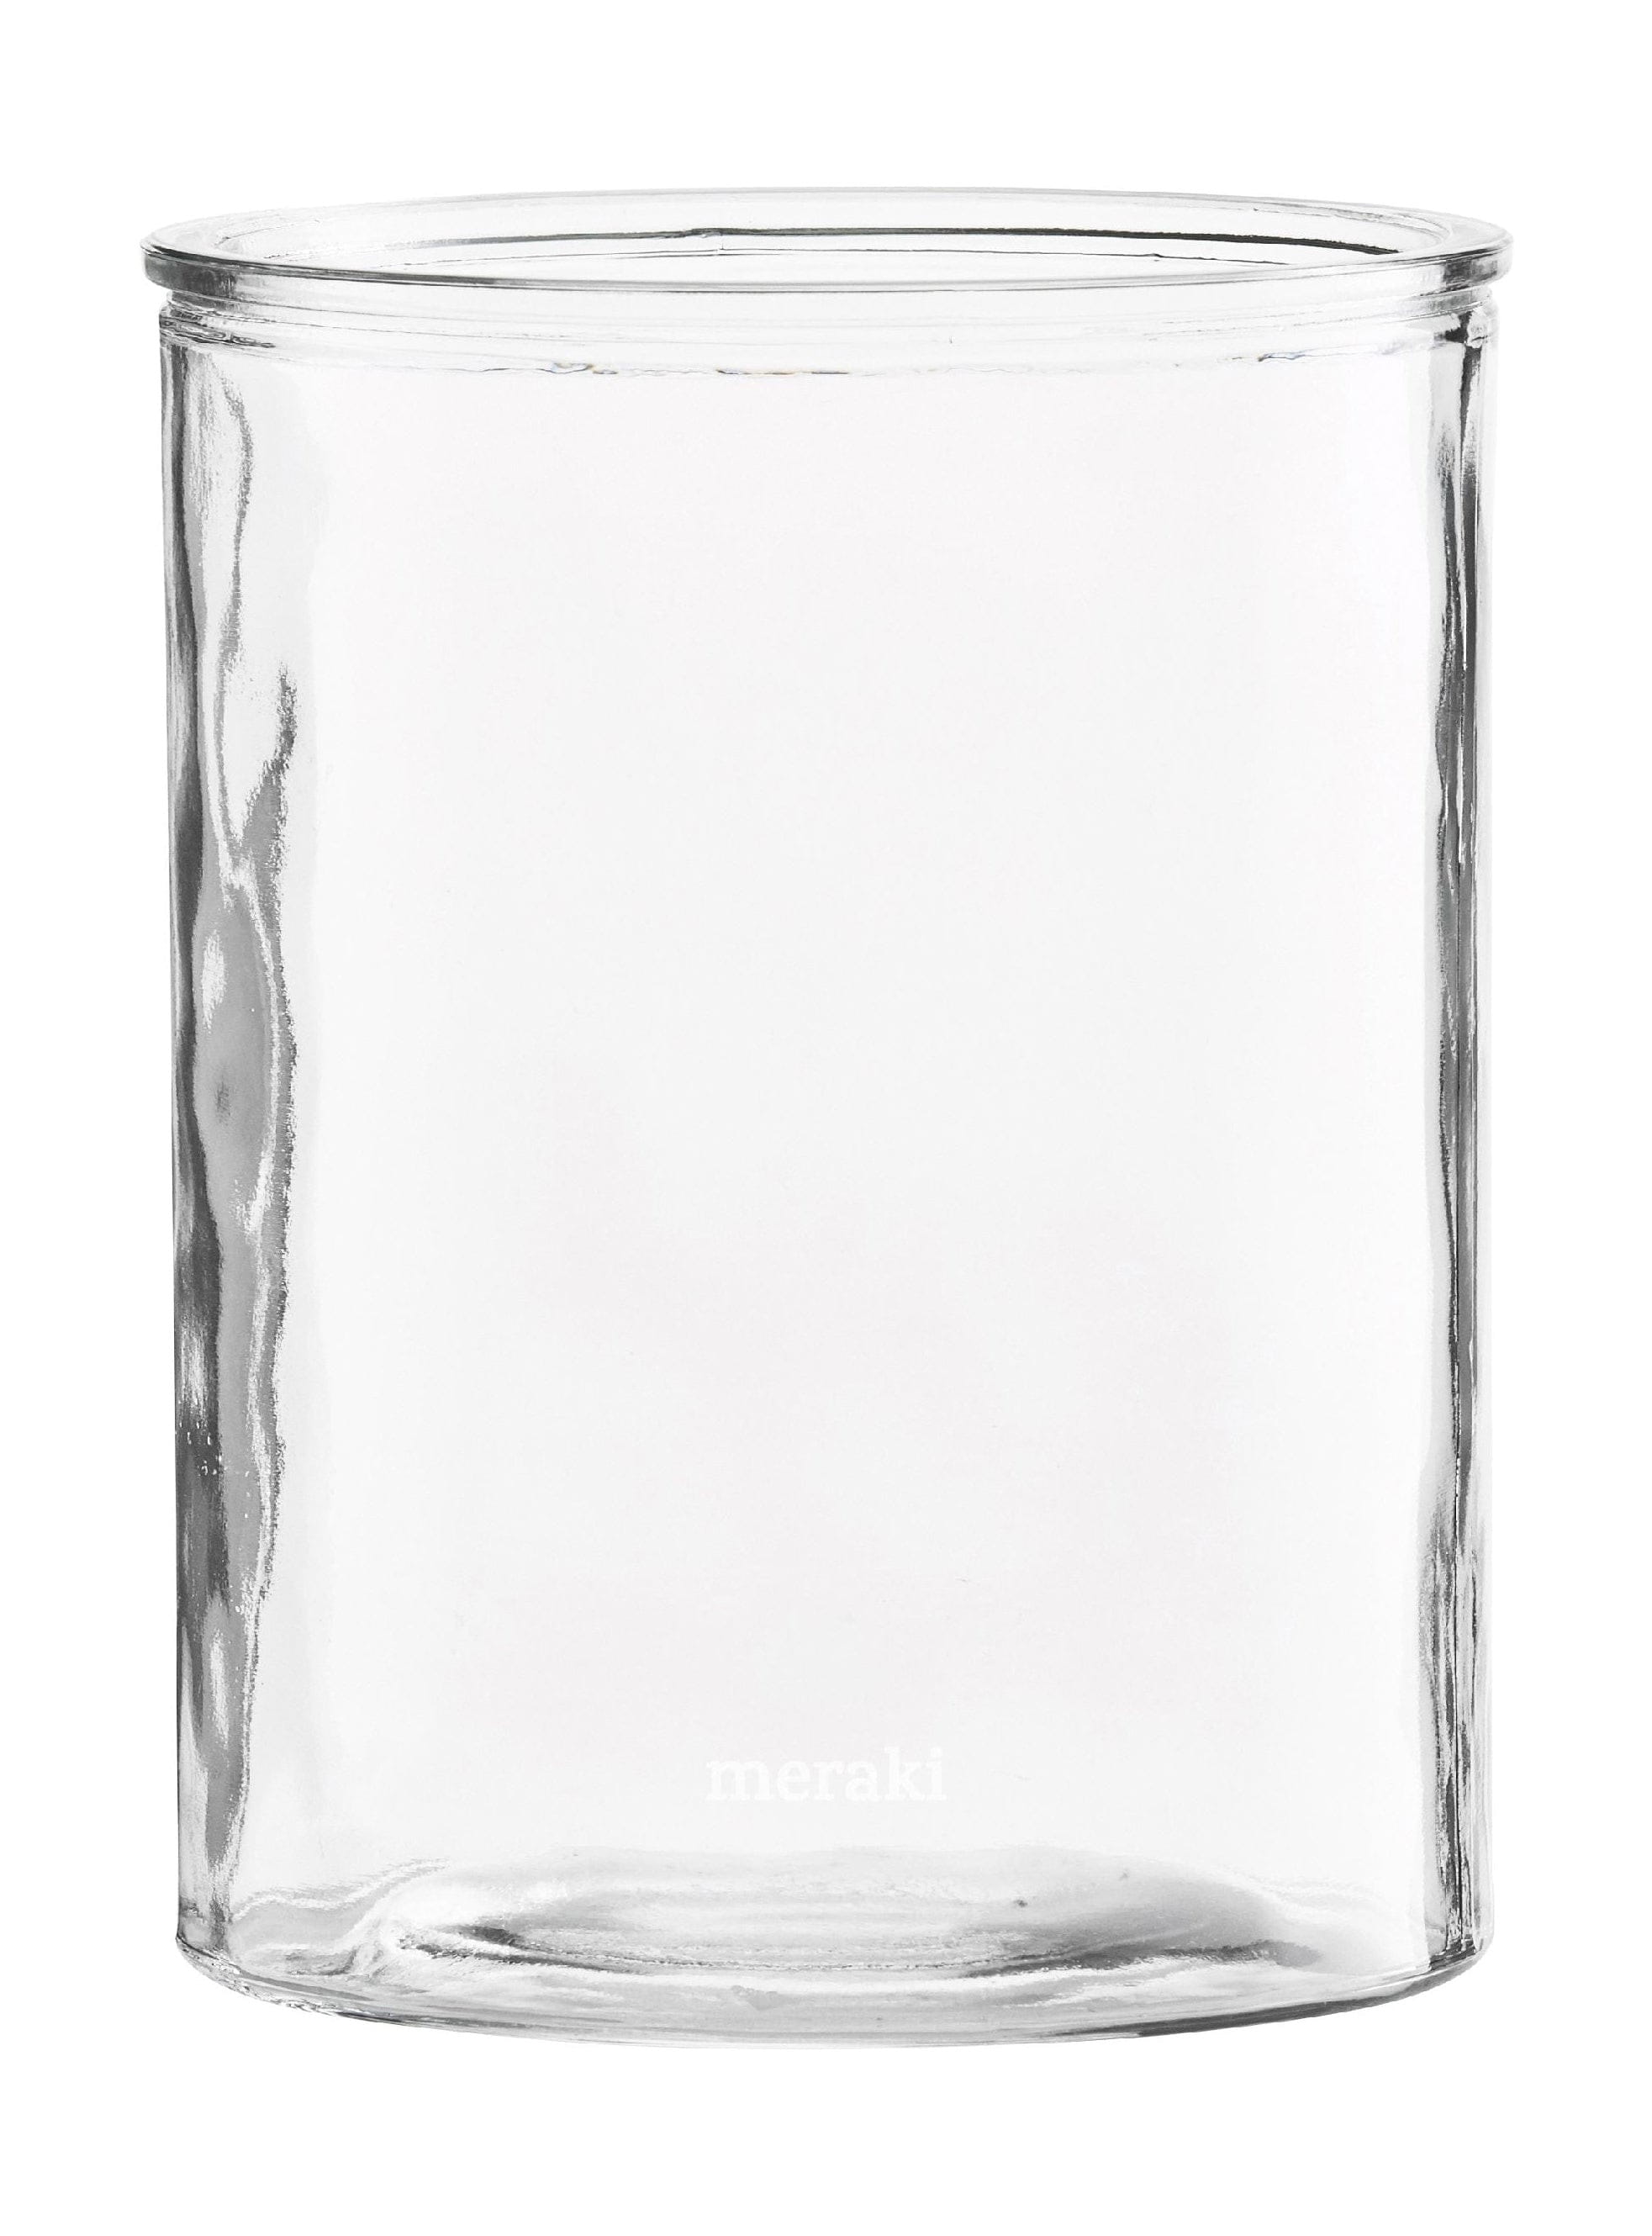 Vase de cylindre Meraki, Øx H 12,5x15 cm